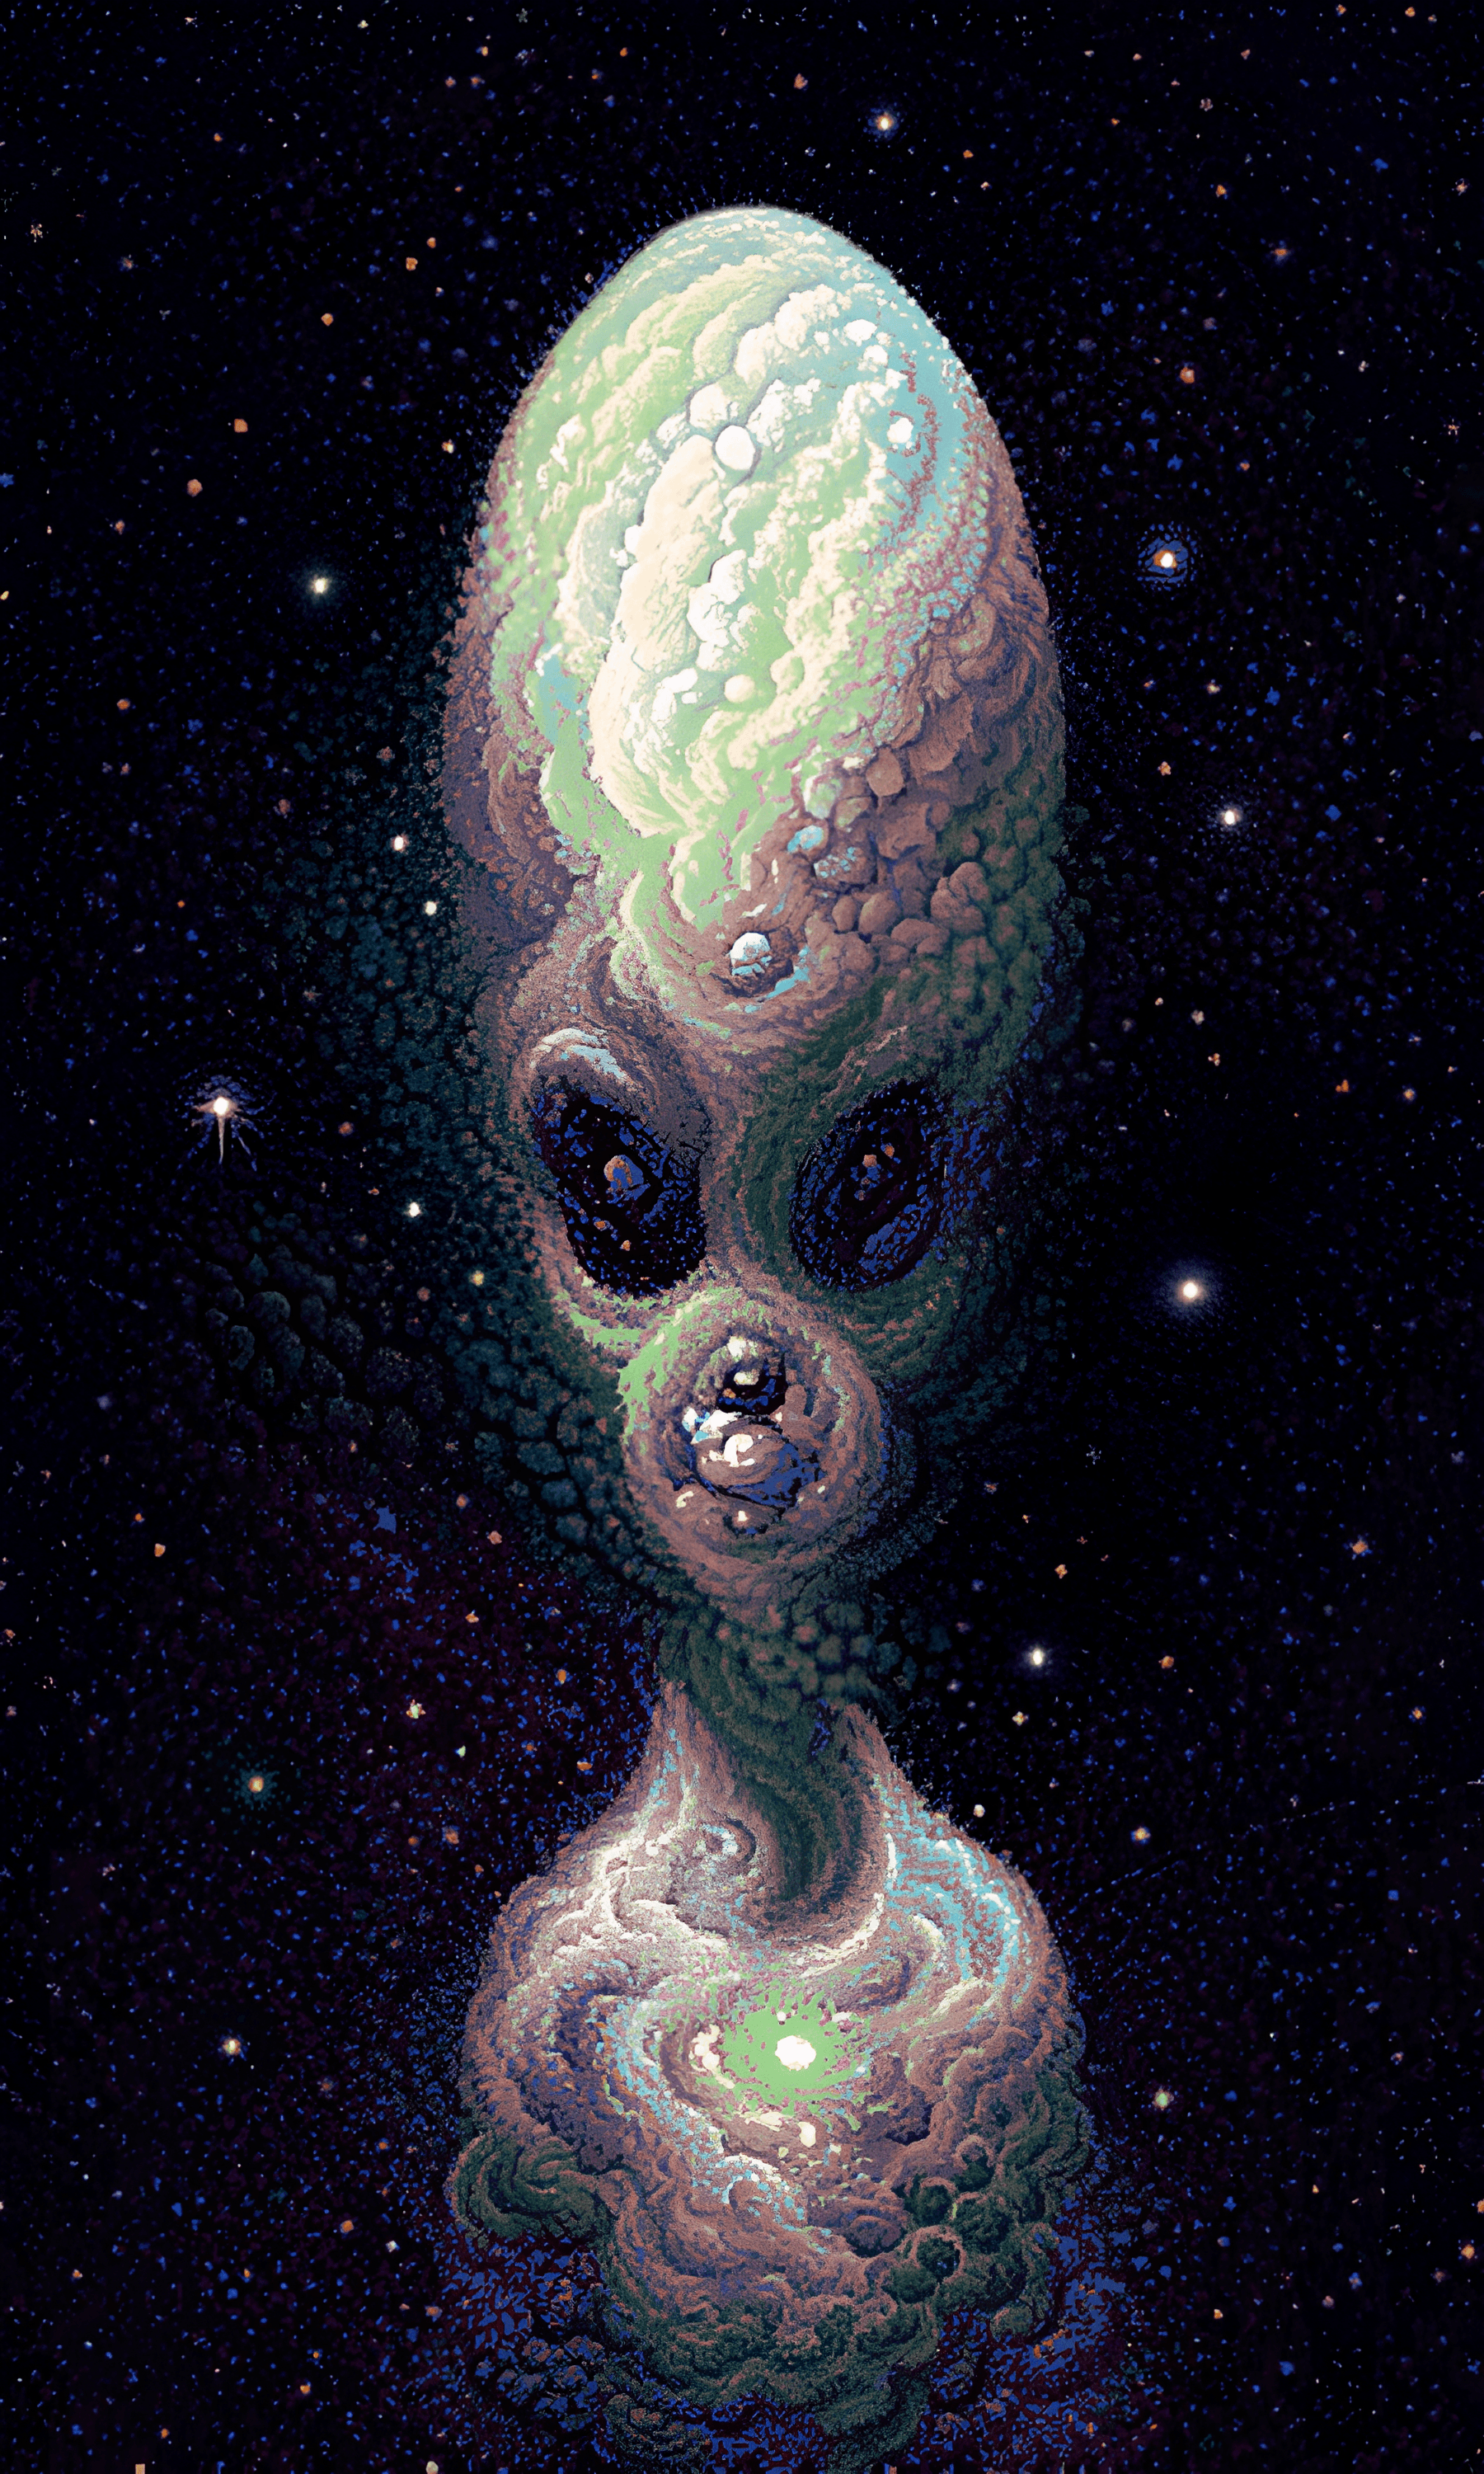 An Alien Dream #2